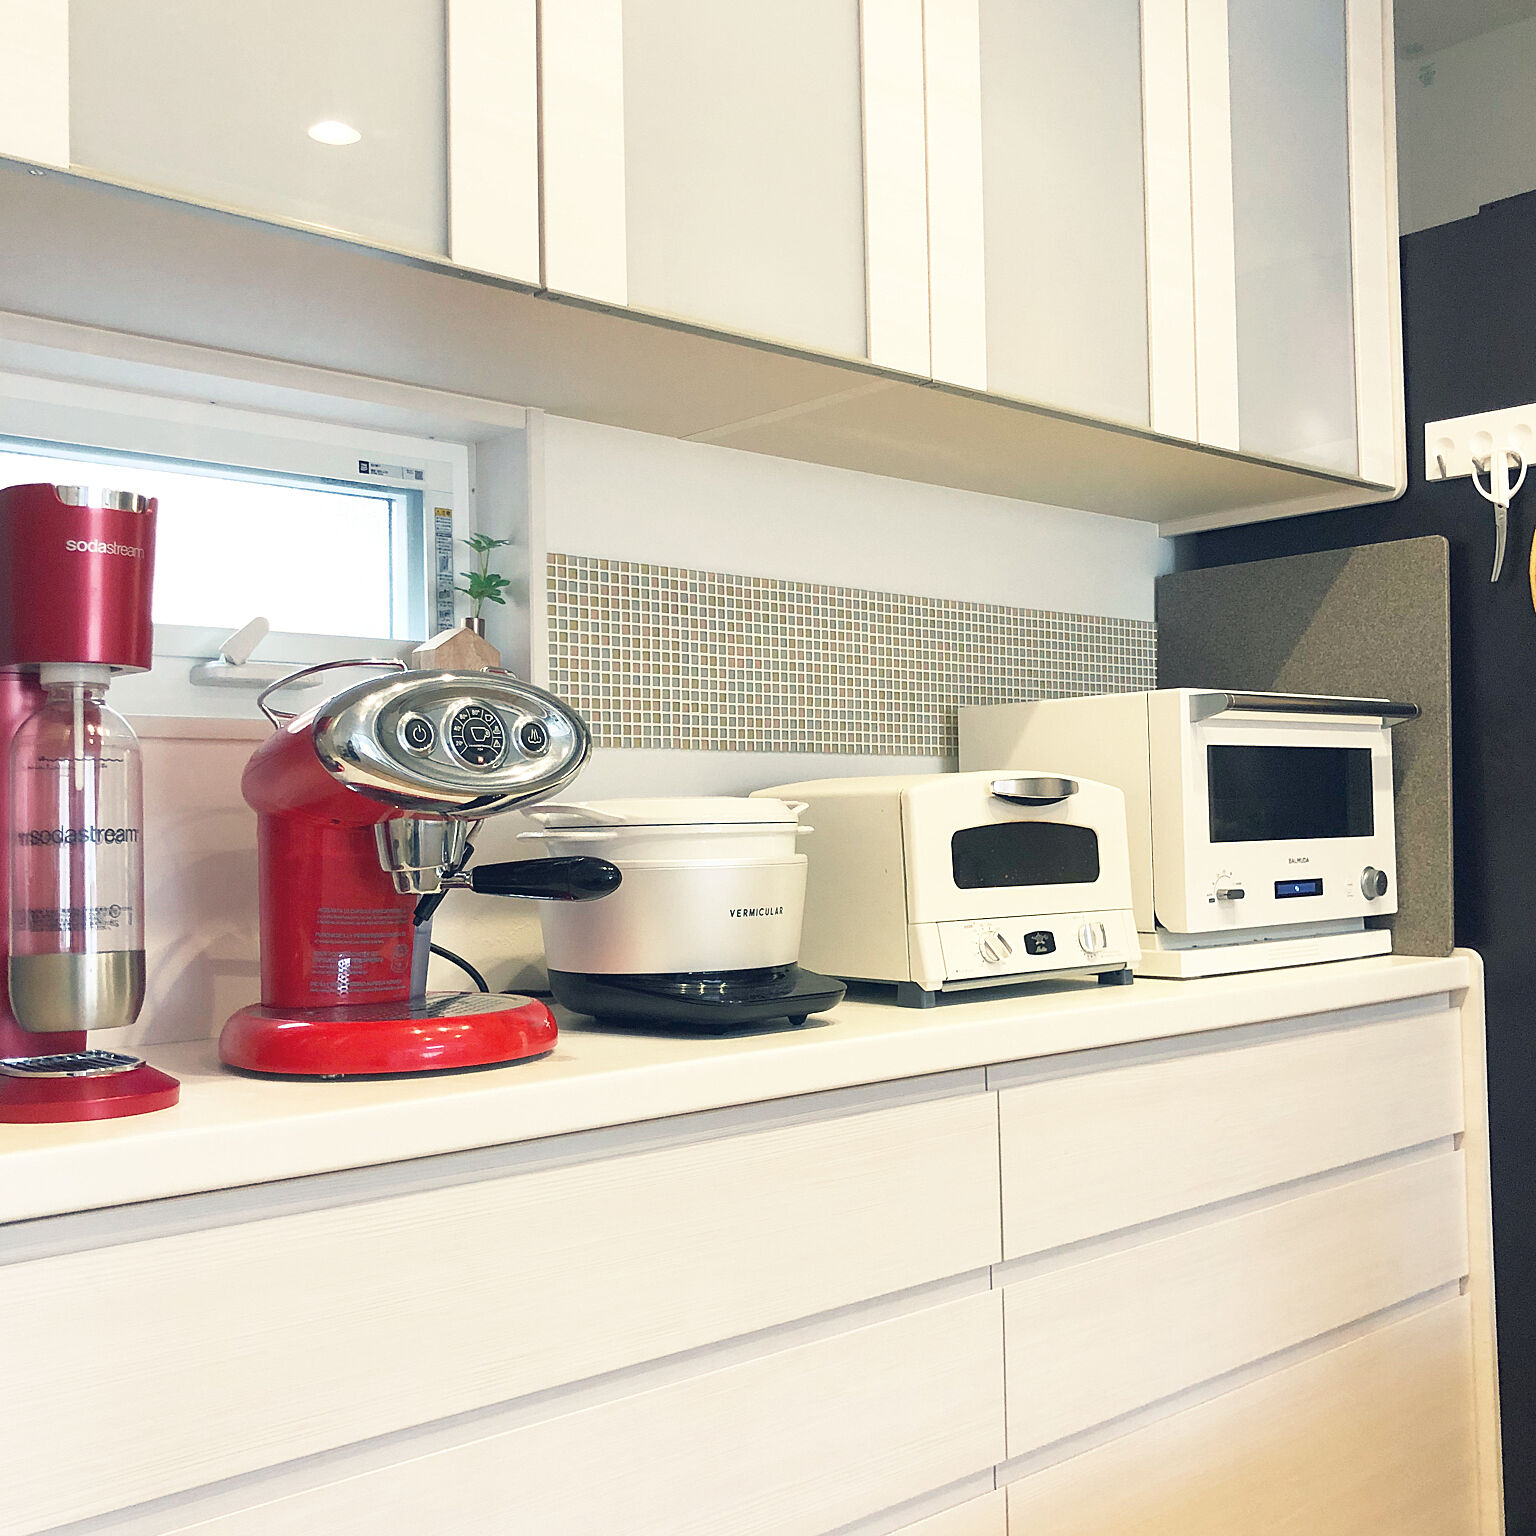 デザイン家電はここまできた スタイリッシュ炊飯器6選 Roomclip Mag 暮らしとインテリアのwebマガジン